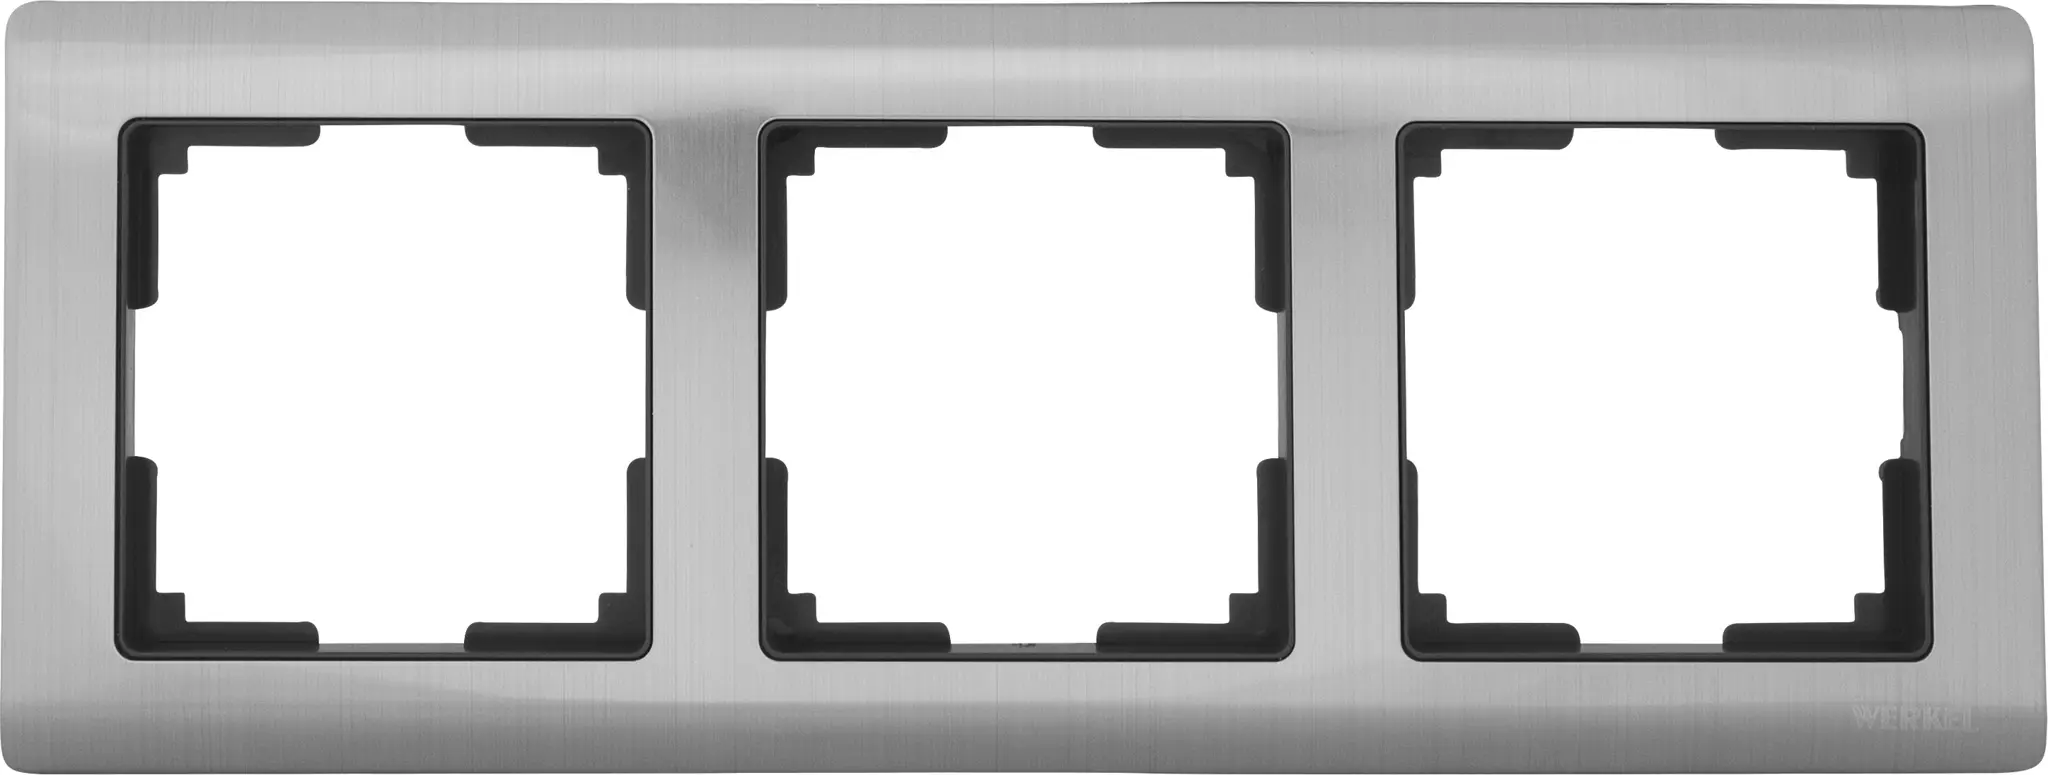 Рамка для розеток и выключателей Werkel Metallic 3 поста металл цвет глянцевый никель рамка на 2 поста werkel metallic w0021602 4690389159039